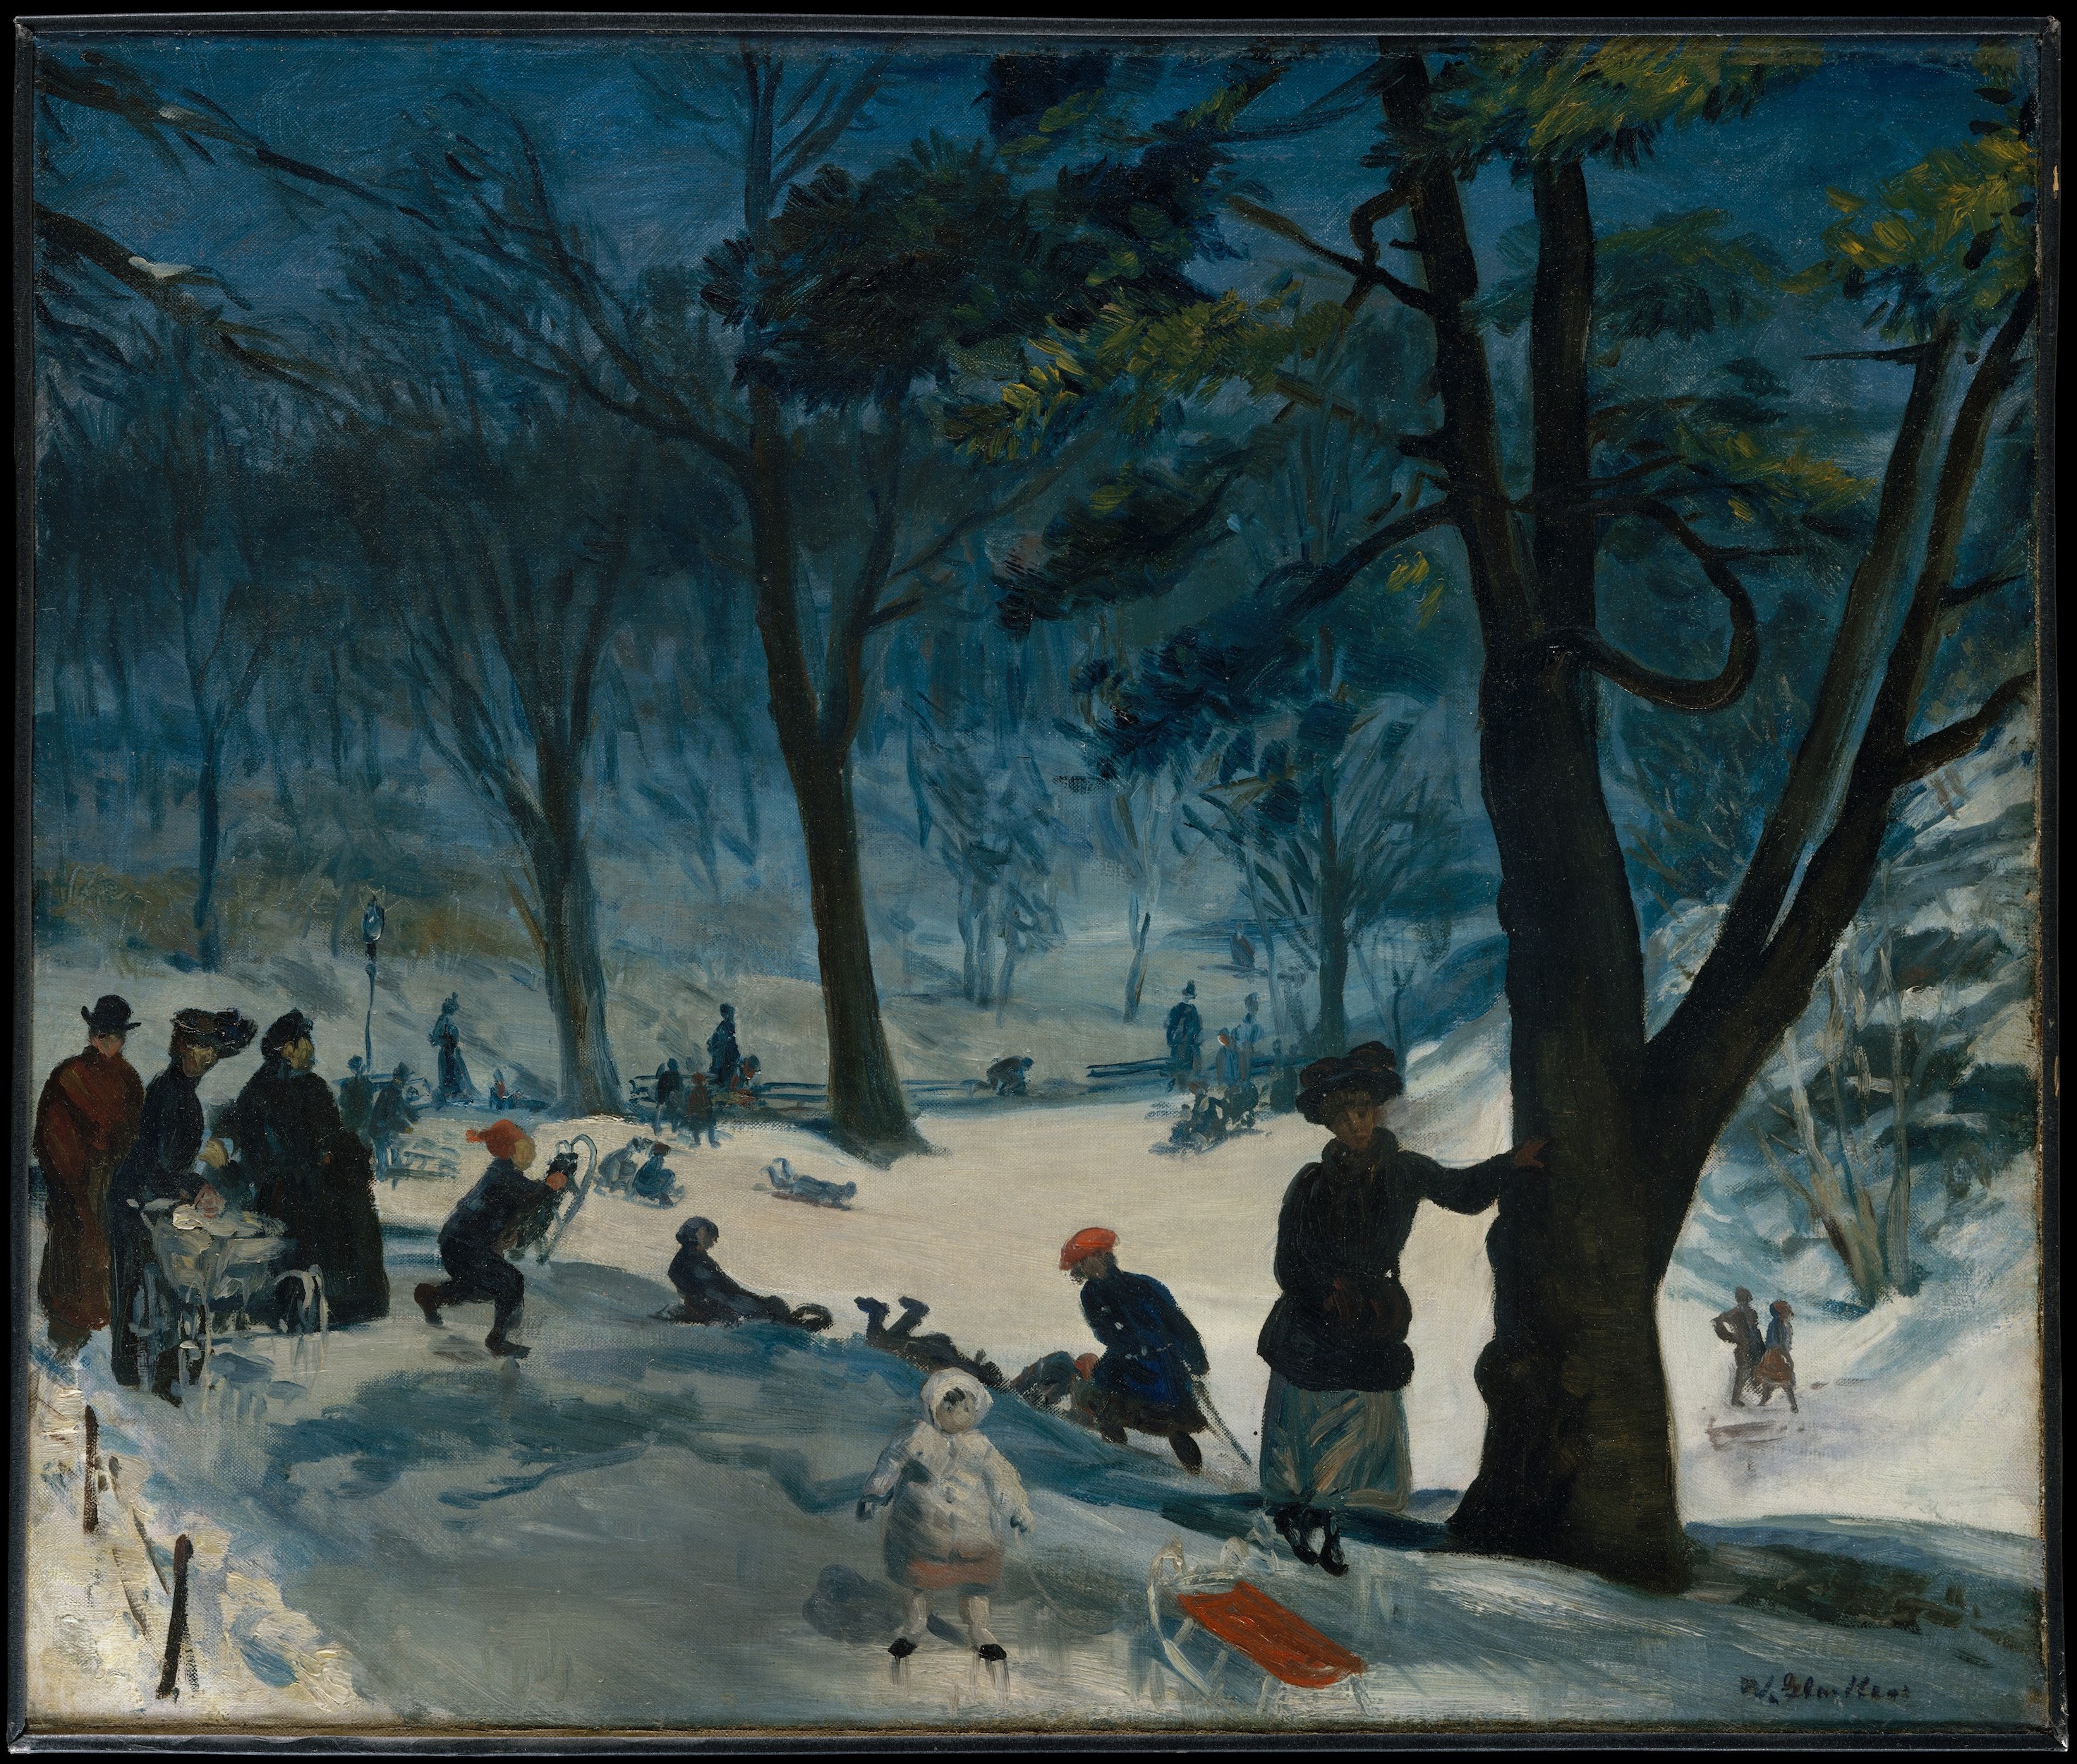 센트럴 파크, 겨울(Central Park, Winter) by William Glackens - ca. 1905 - 63.5 x 76.2 cm 